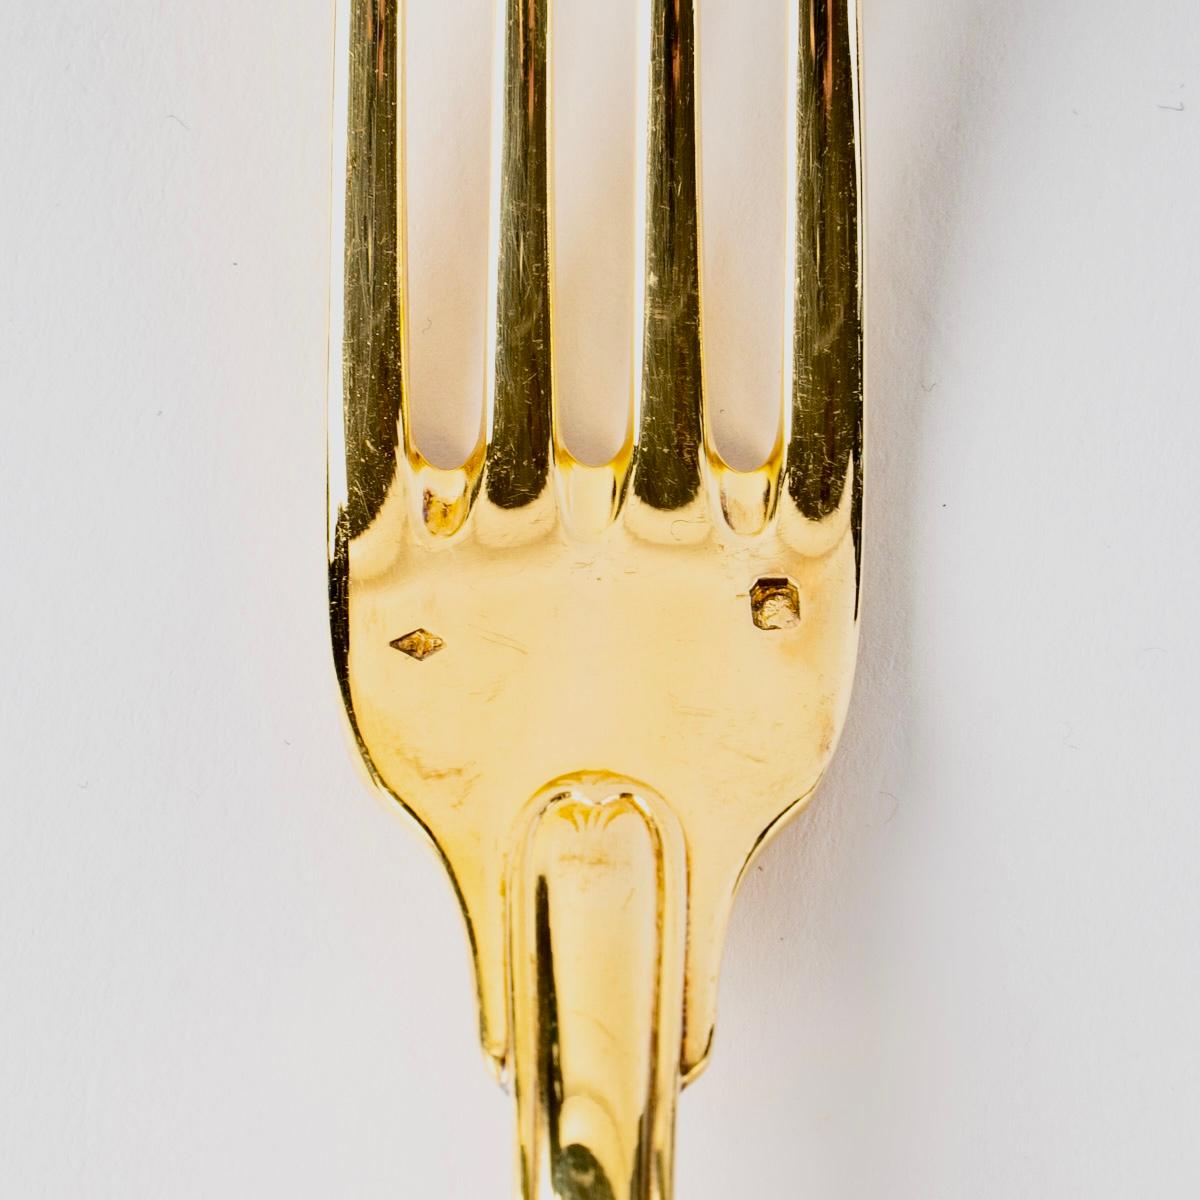 Puiforcat, Elysée Vermeil Gold Sterling Silver Flatware Cutlery Set, 70 Pieces 6